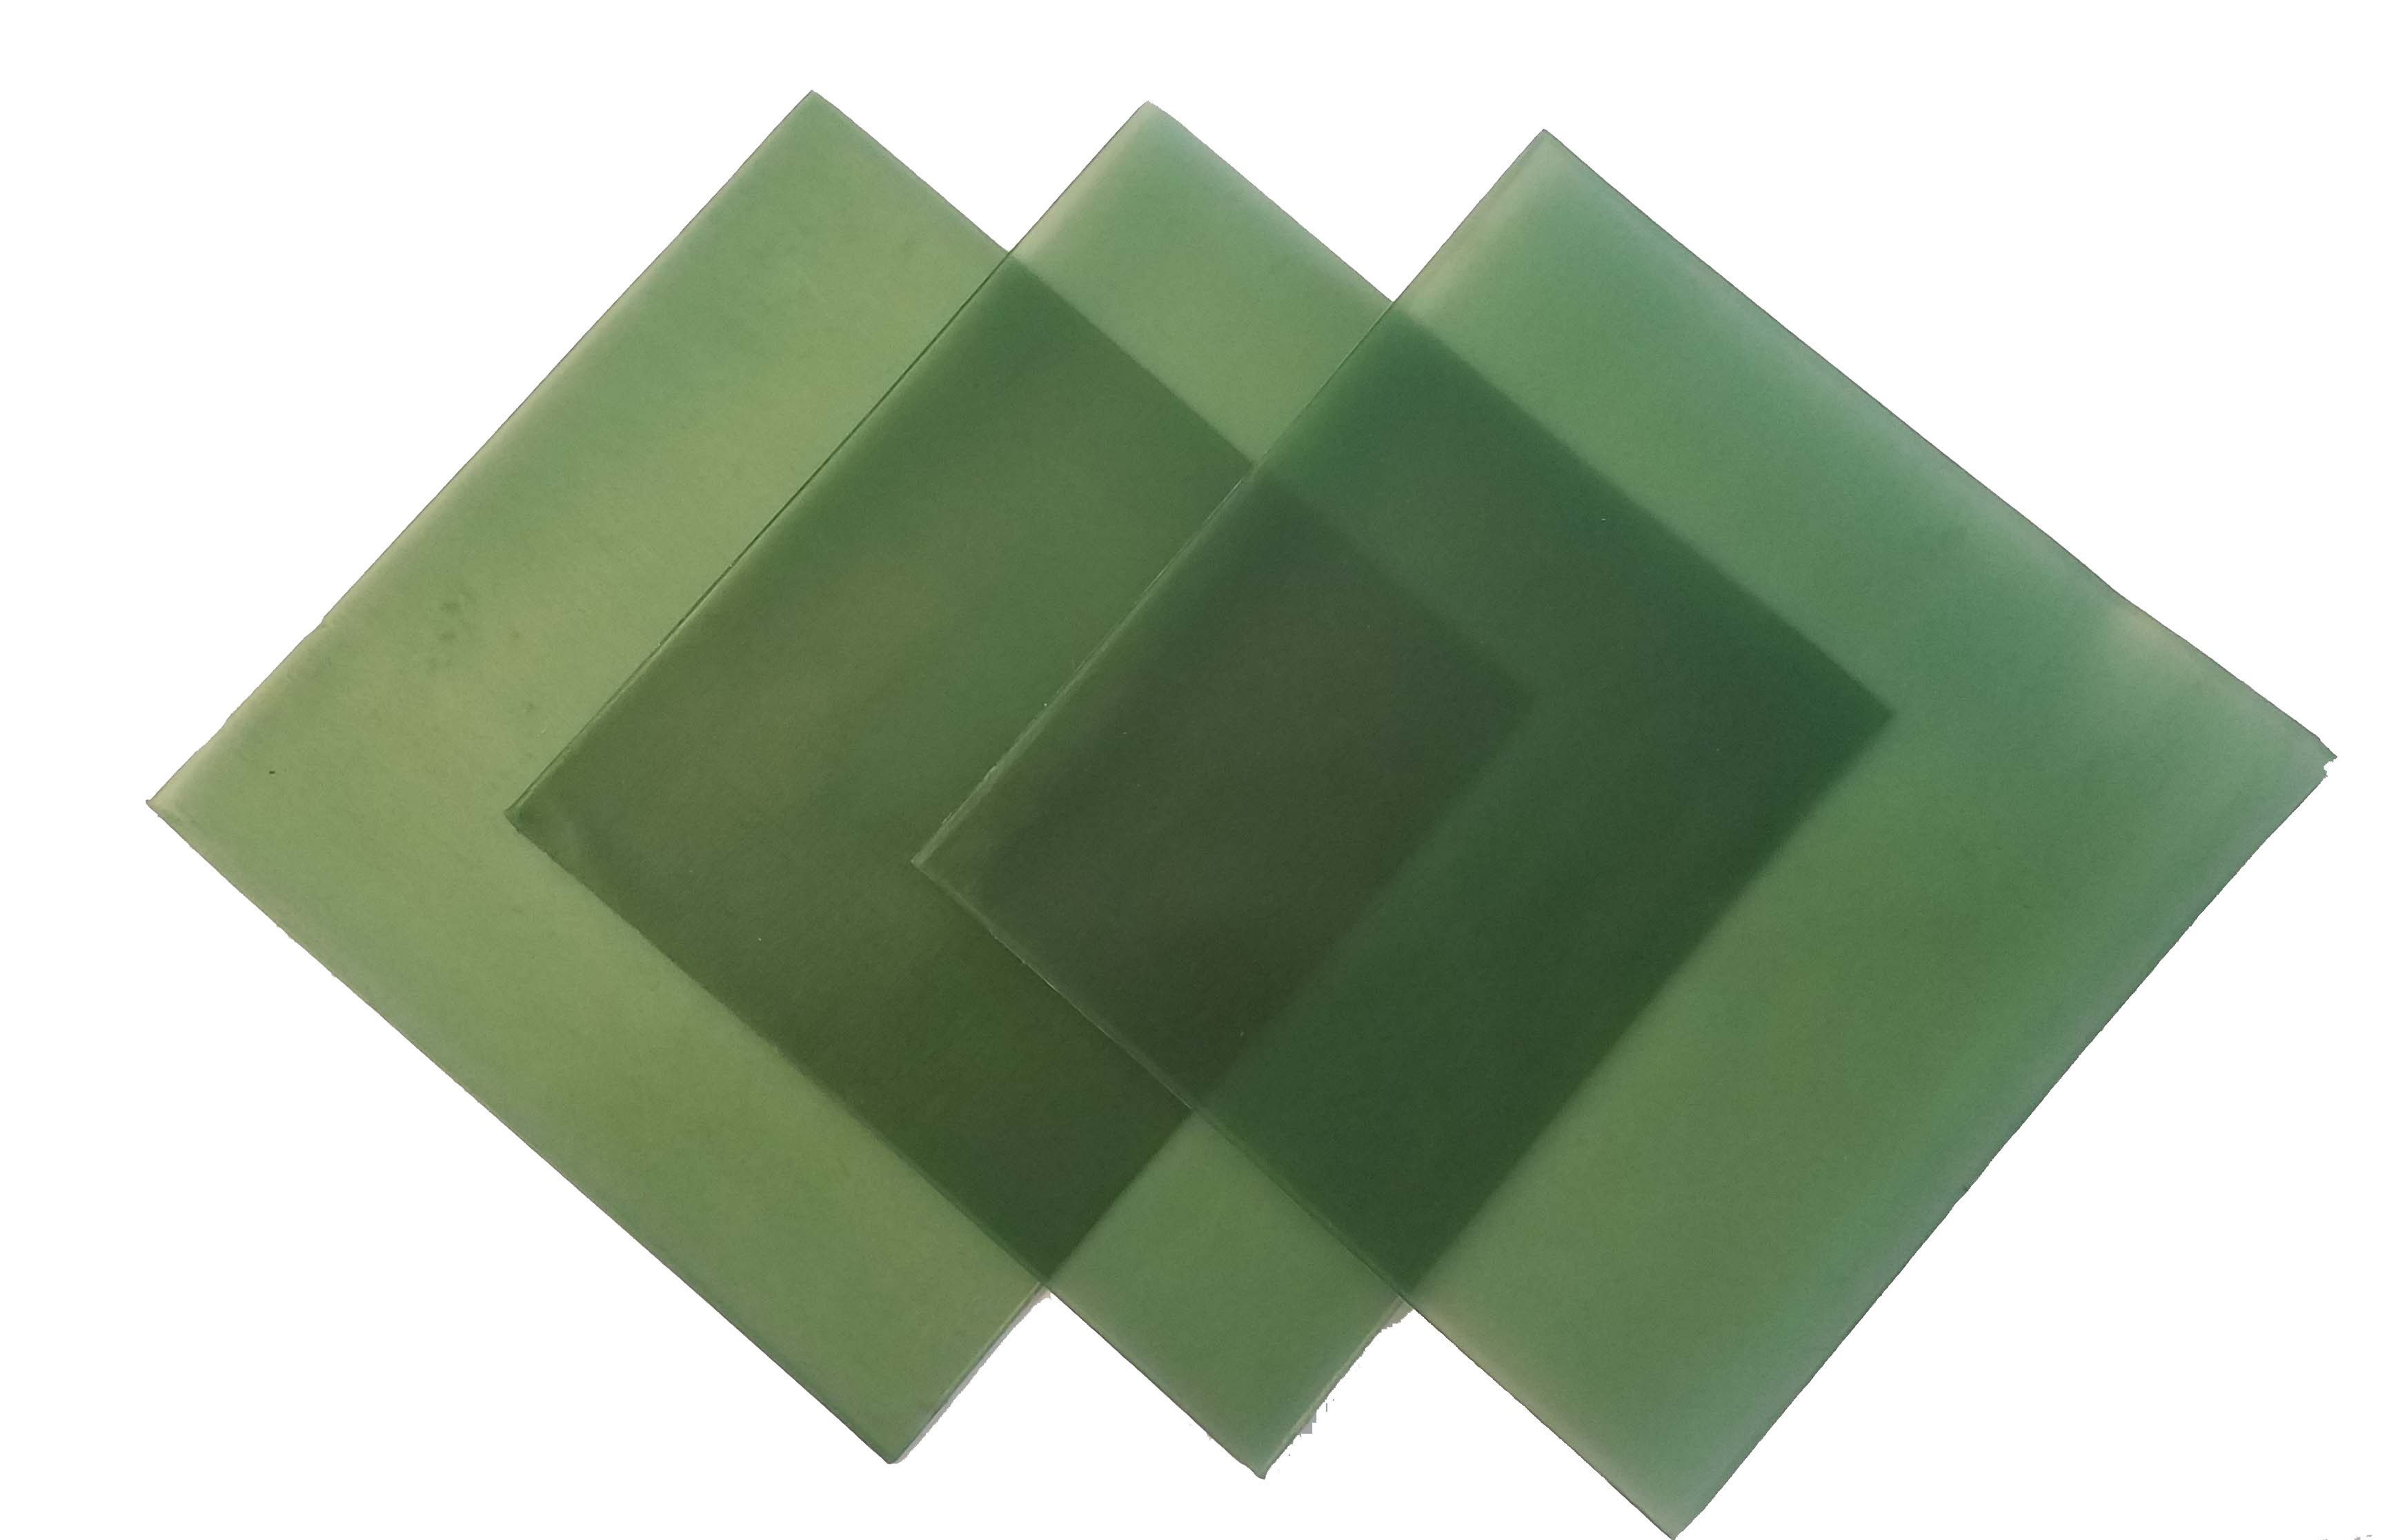 4"x4" sheet wax 16 gauge green